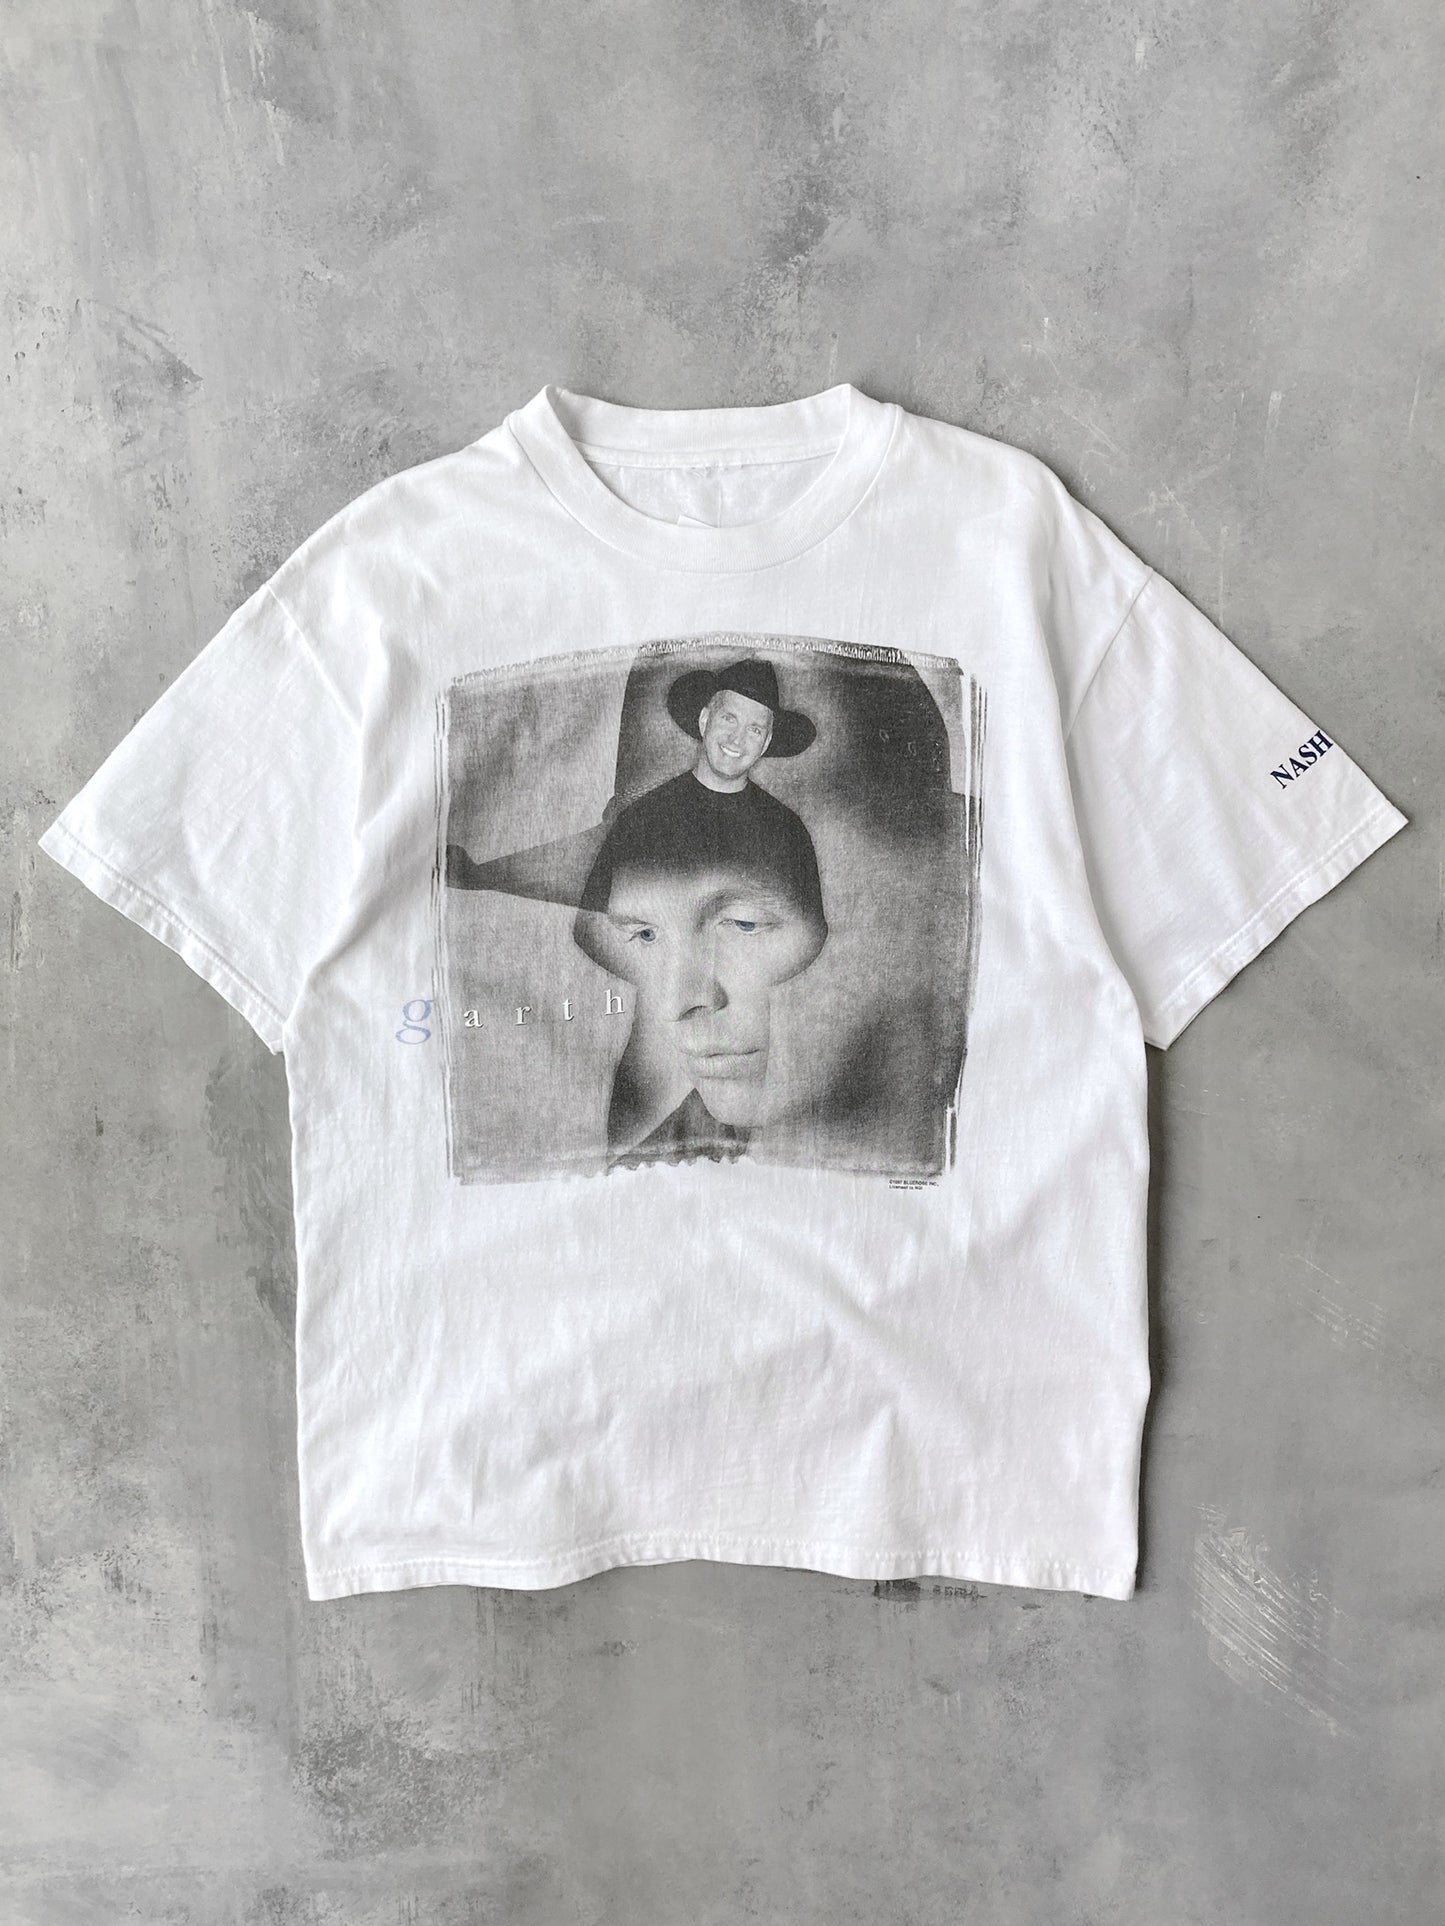 Garth Brooks T-Shirt '97 - XL